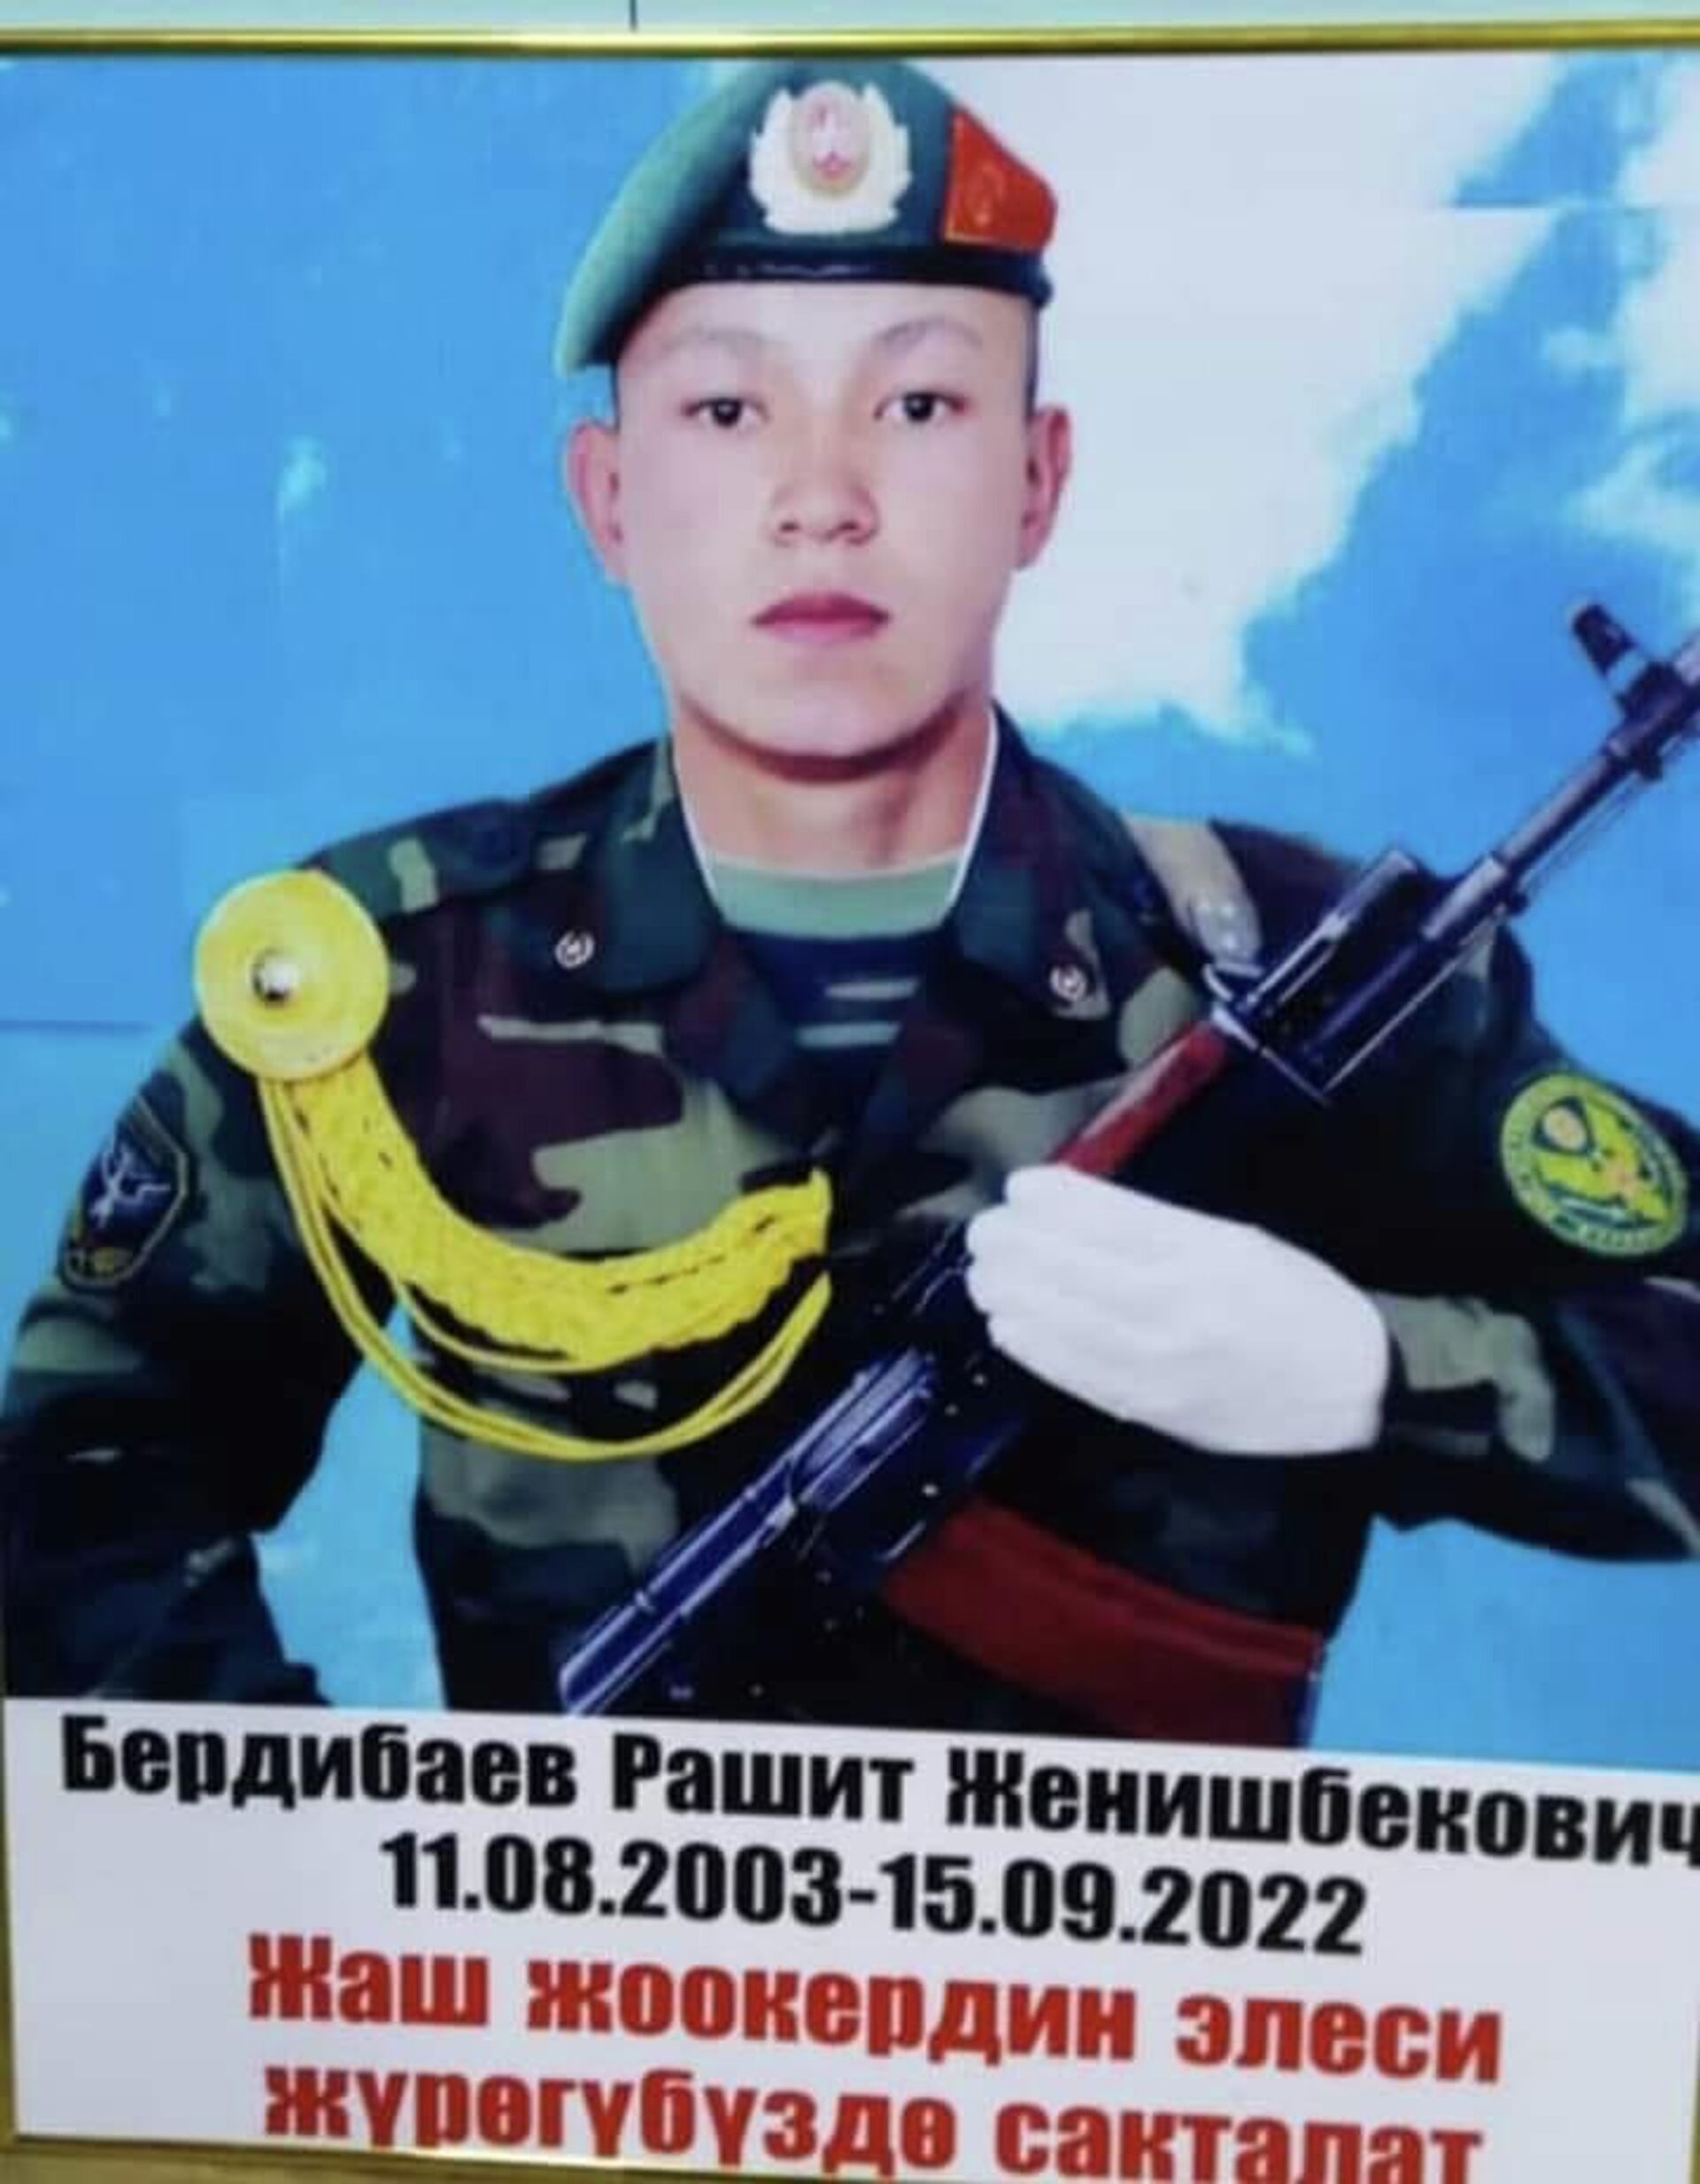 Пограничник Рашид Бердибаев, погибший в ходе пограничного конфликта в Баткенской области - Sputnik Кыргызстан, 1920, 28.09.2022